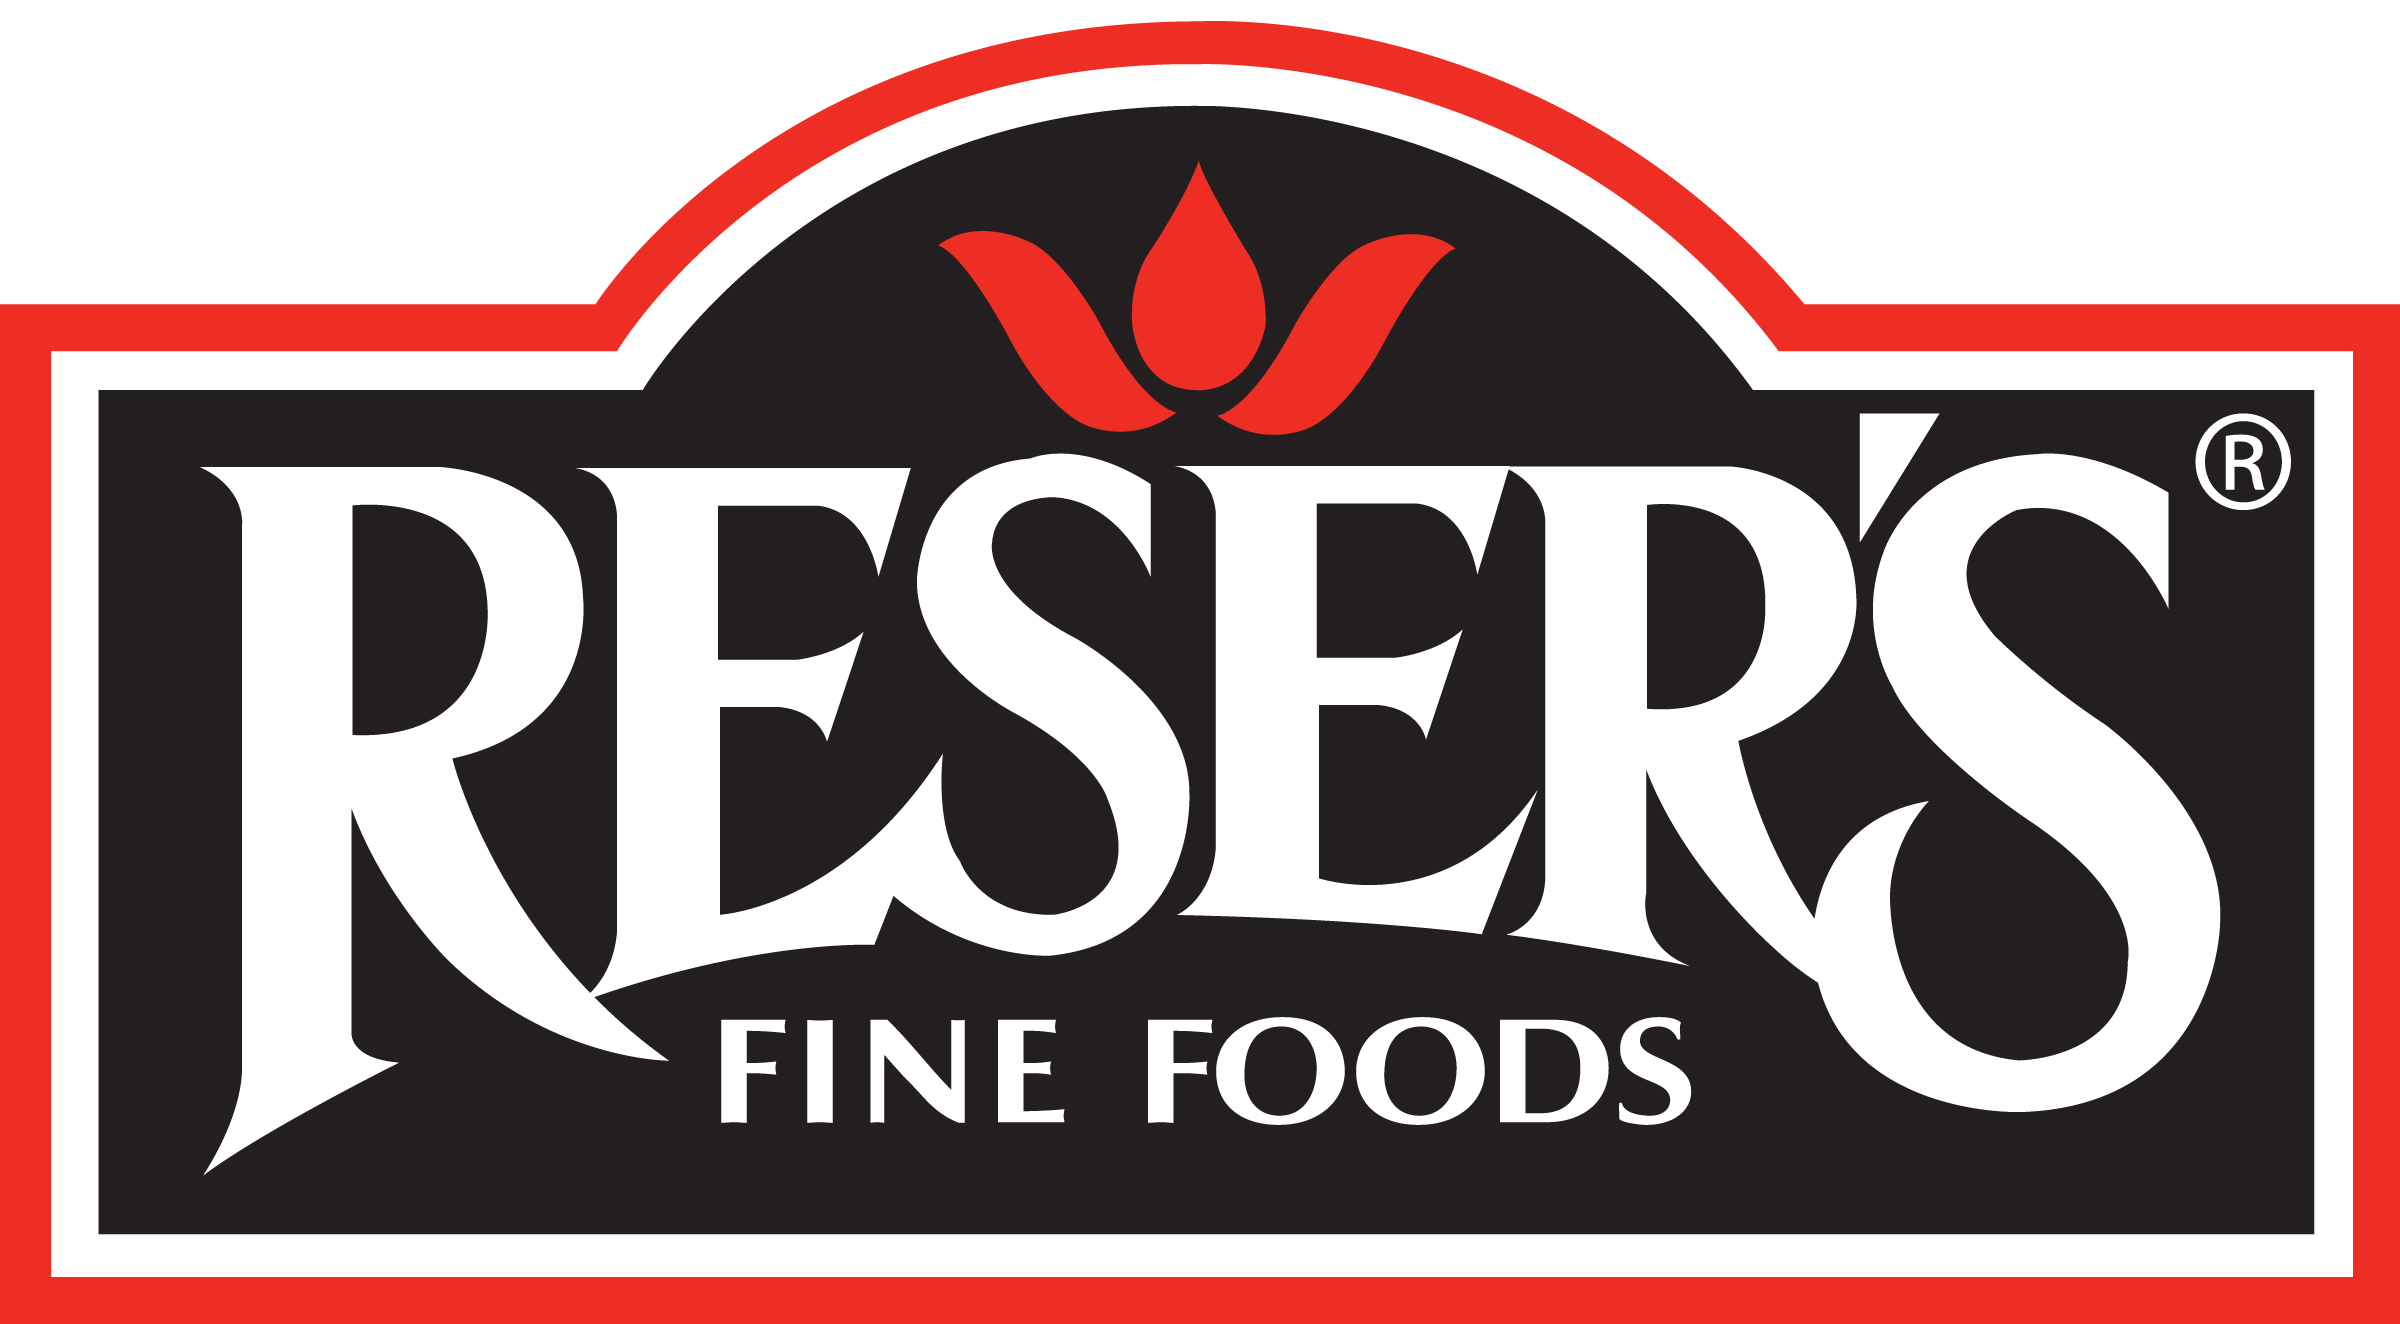 Reser's Fine Foods